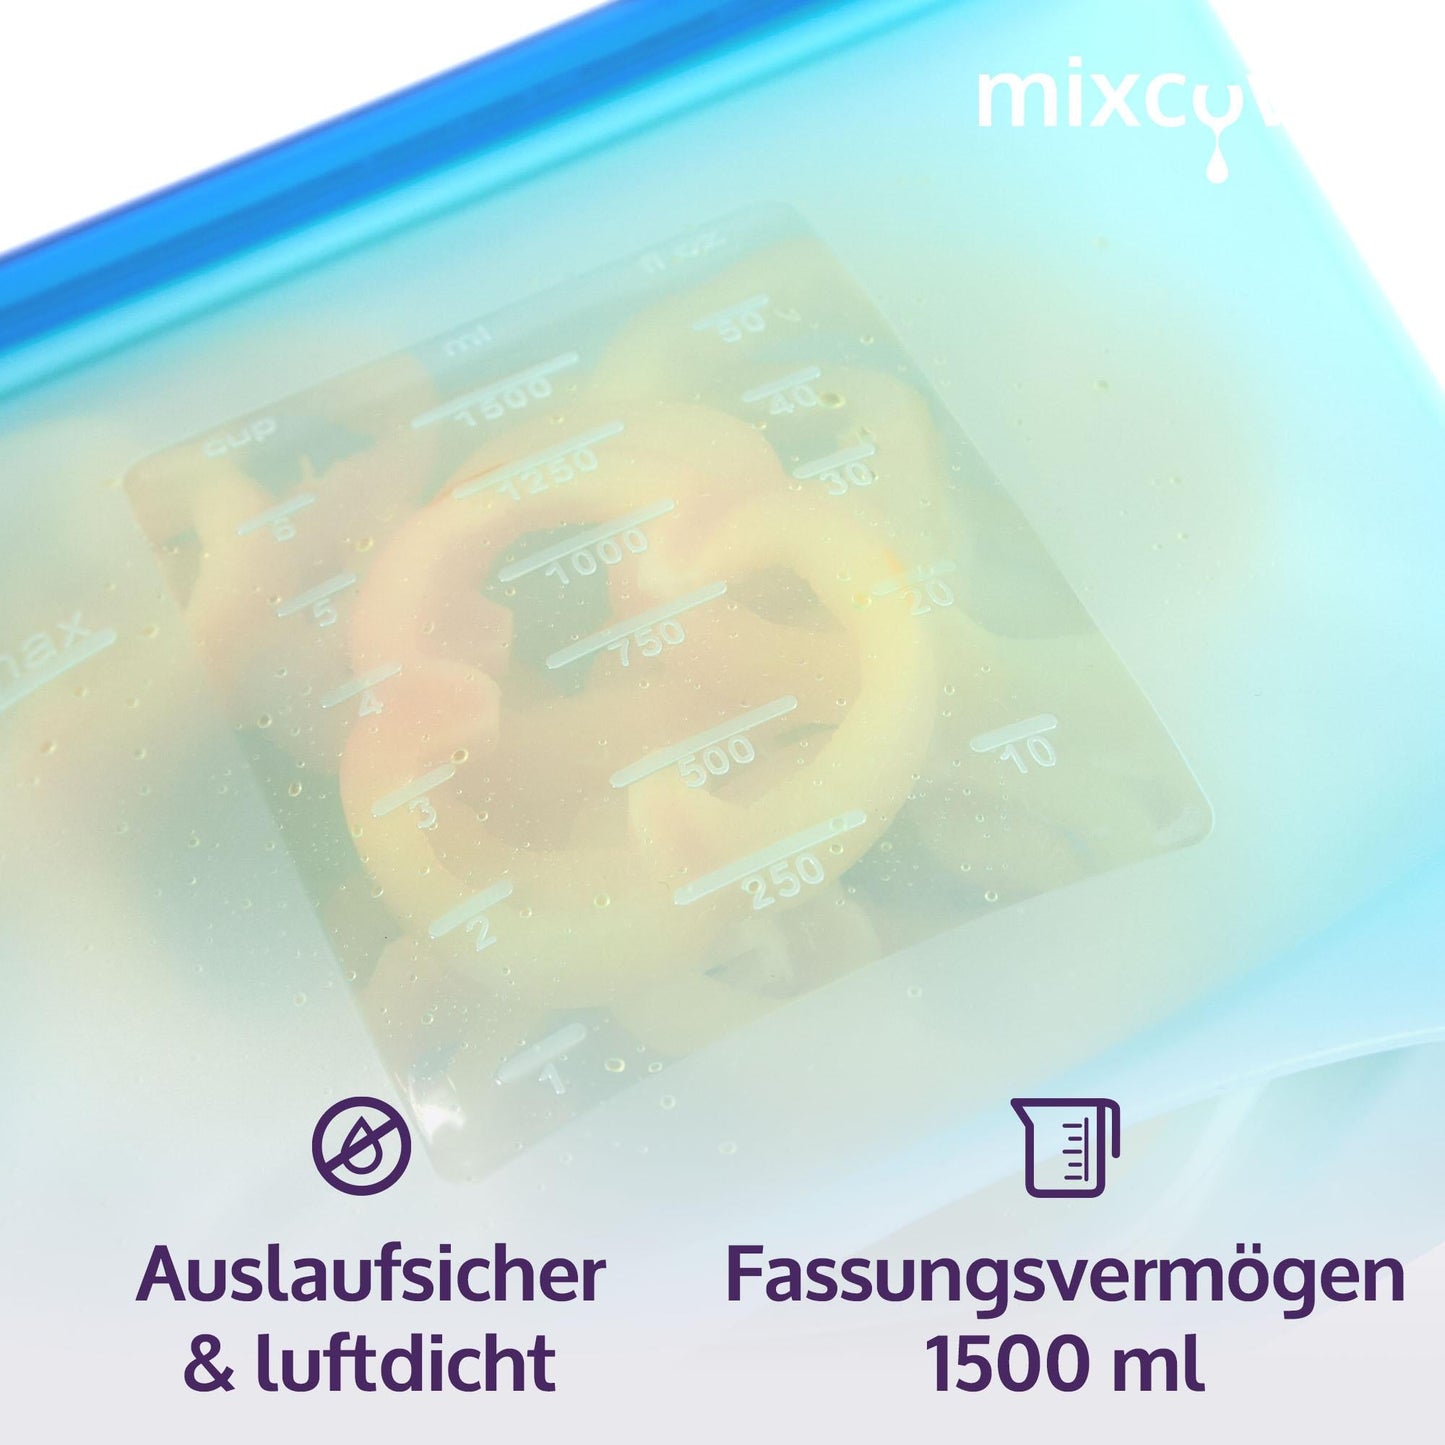 mixcover wiederverwendbarer Frischhaltebeutel aus Silikon mit Verschluss, auslaufsicher, nachhaltig, BPA-frei, 1500 ml - Mixcover - Mixcover